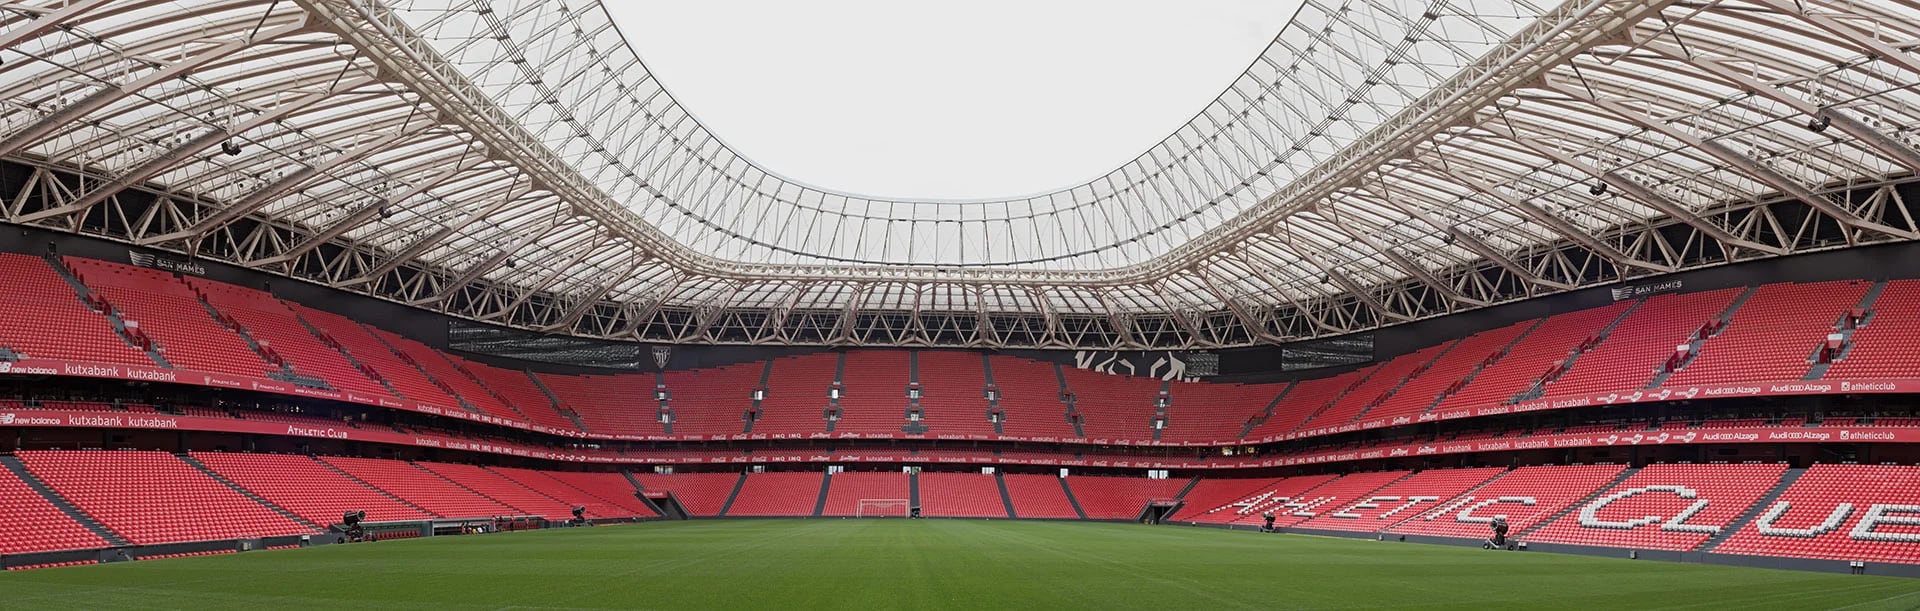 El nuevo estadio San Mamés del Athletic Bilbao, en el que se basará el proyecto "Bombonera 100 mil" (Shutterstock)